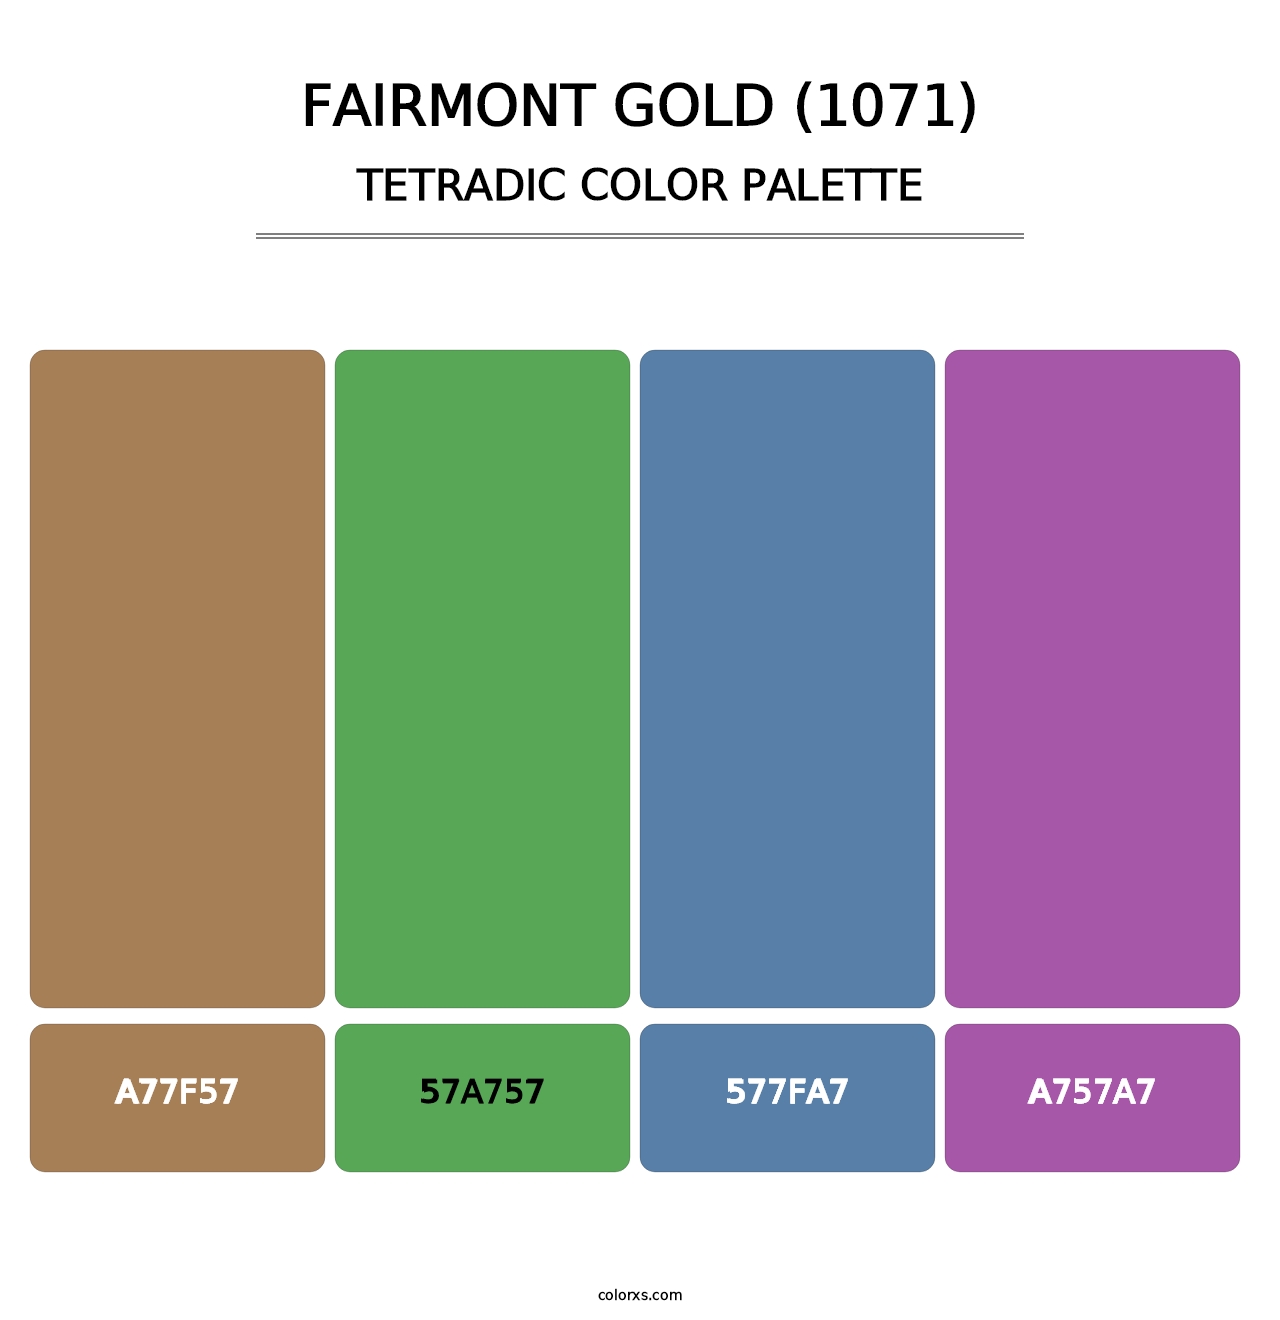 Fairmont Gold (1071) - Tetradic Color Palette